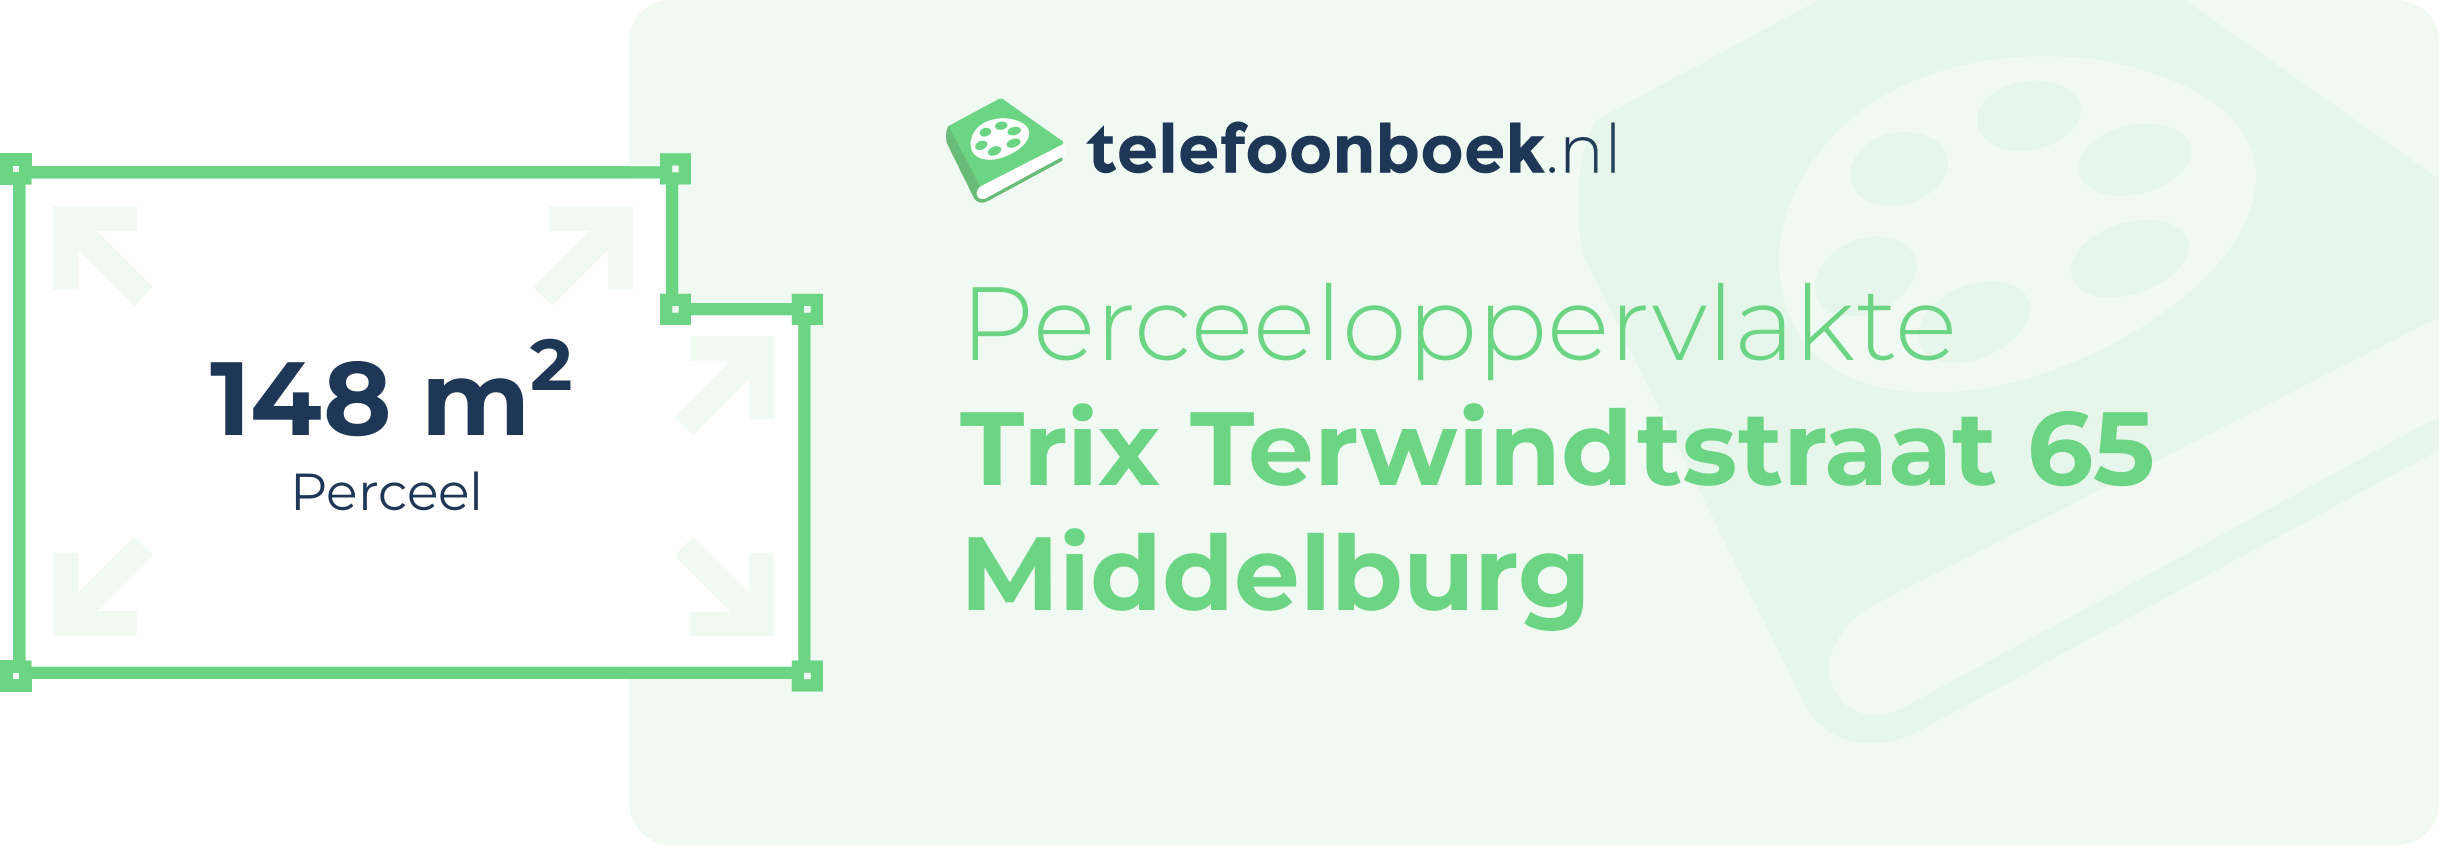 Perceeloppervlakte Trix Terwindtstraat 65 Middelburg